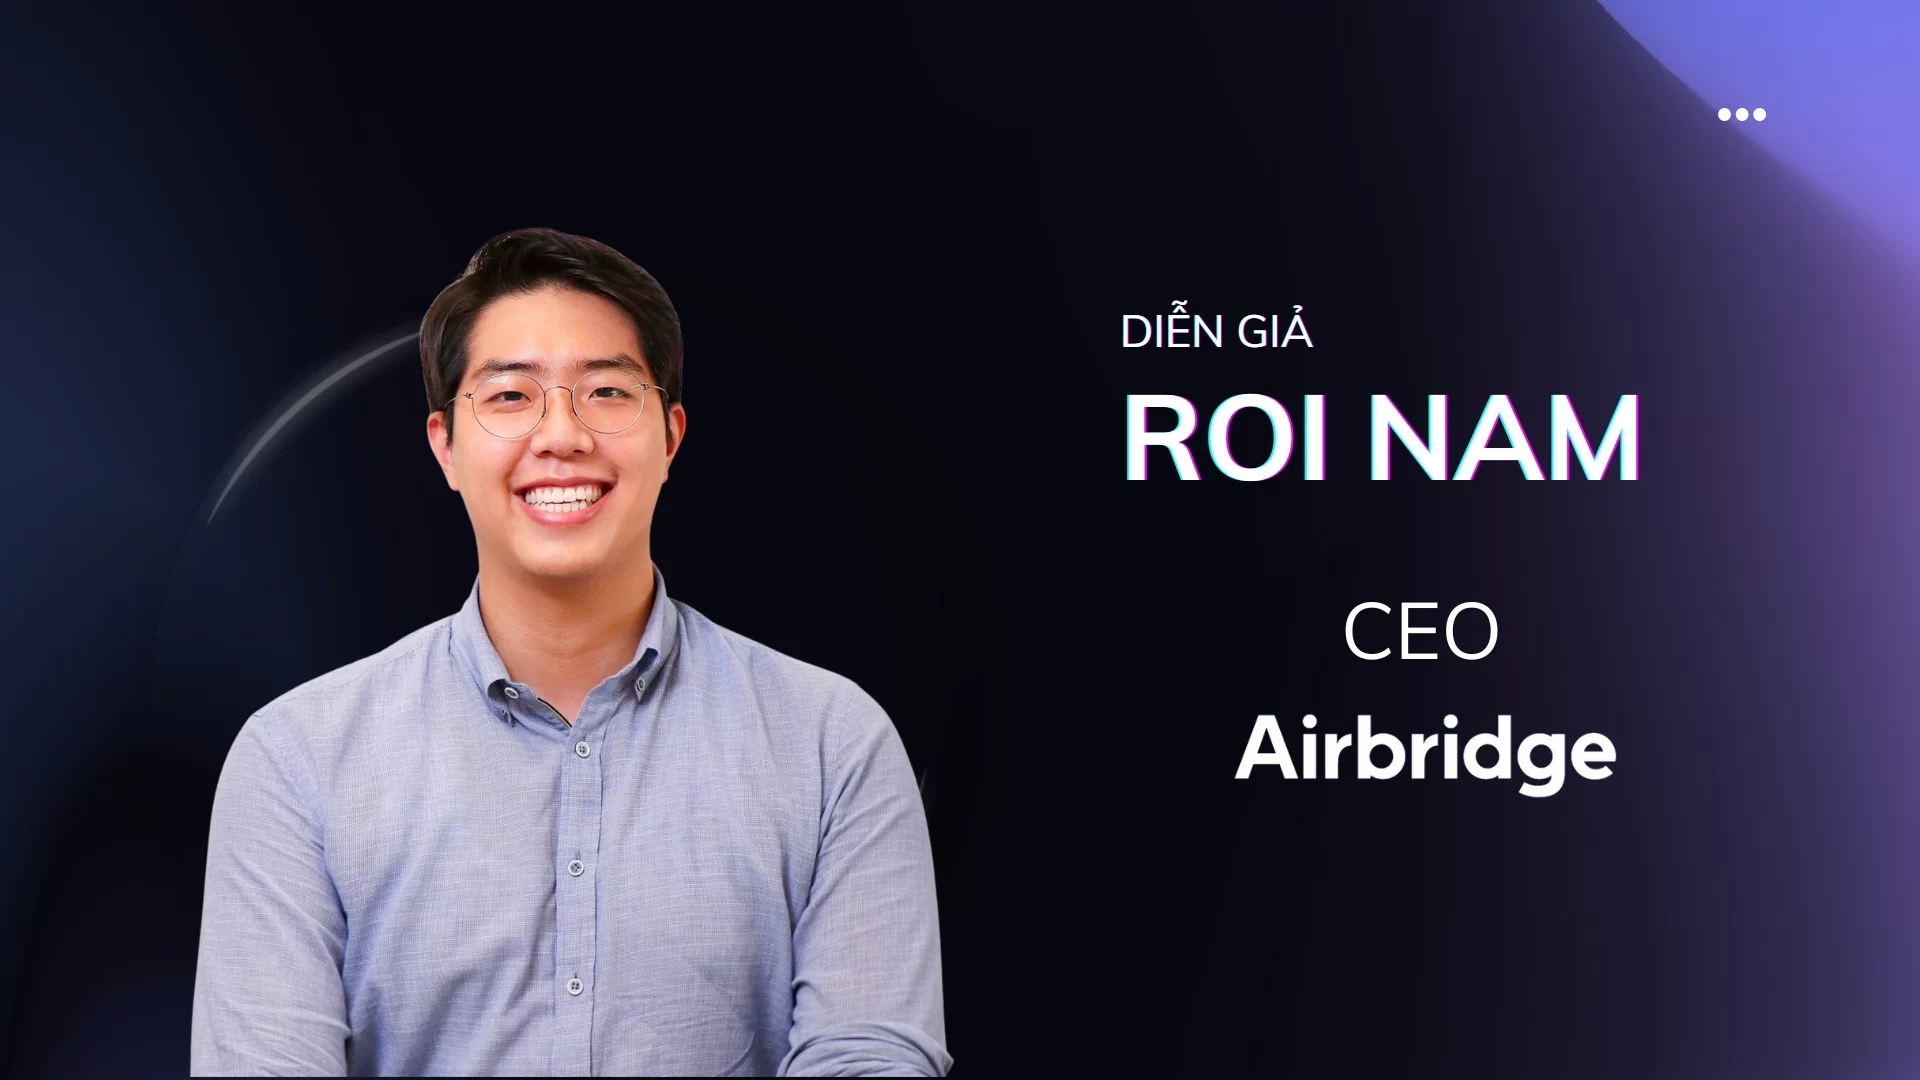 Mr. Roi Nam - CEO, Airbridge